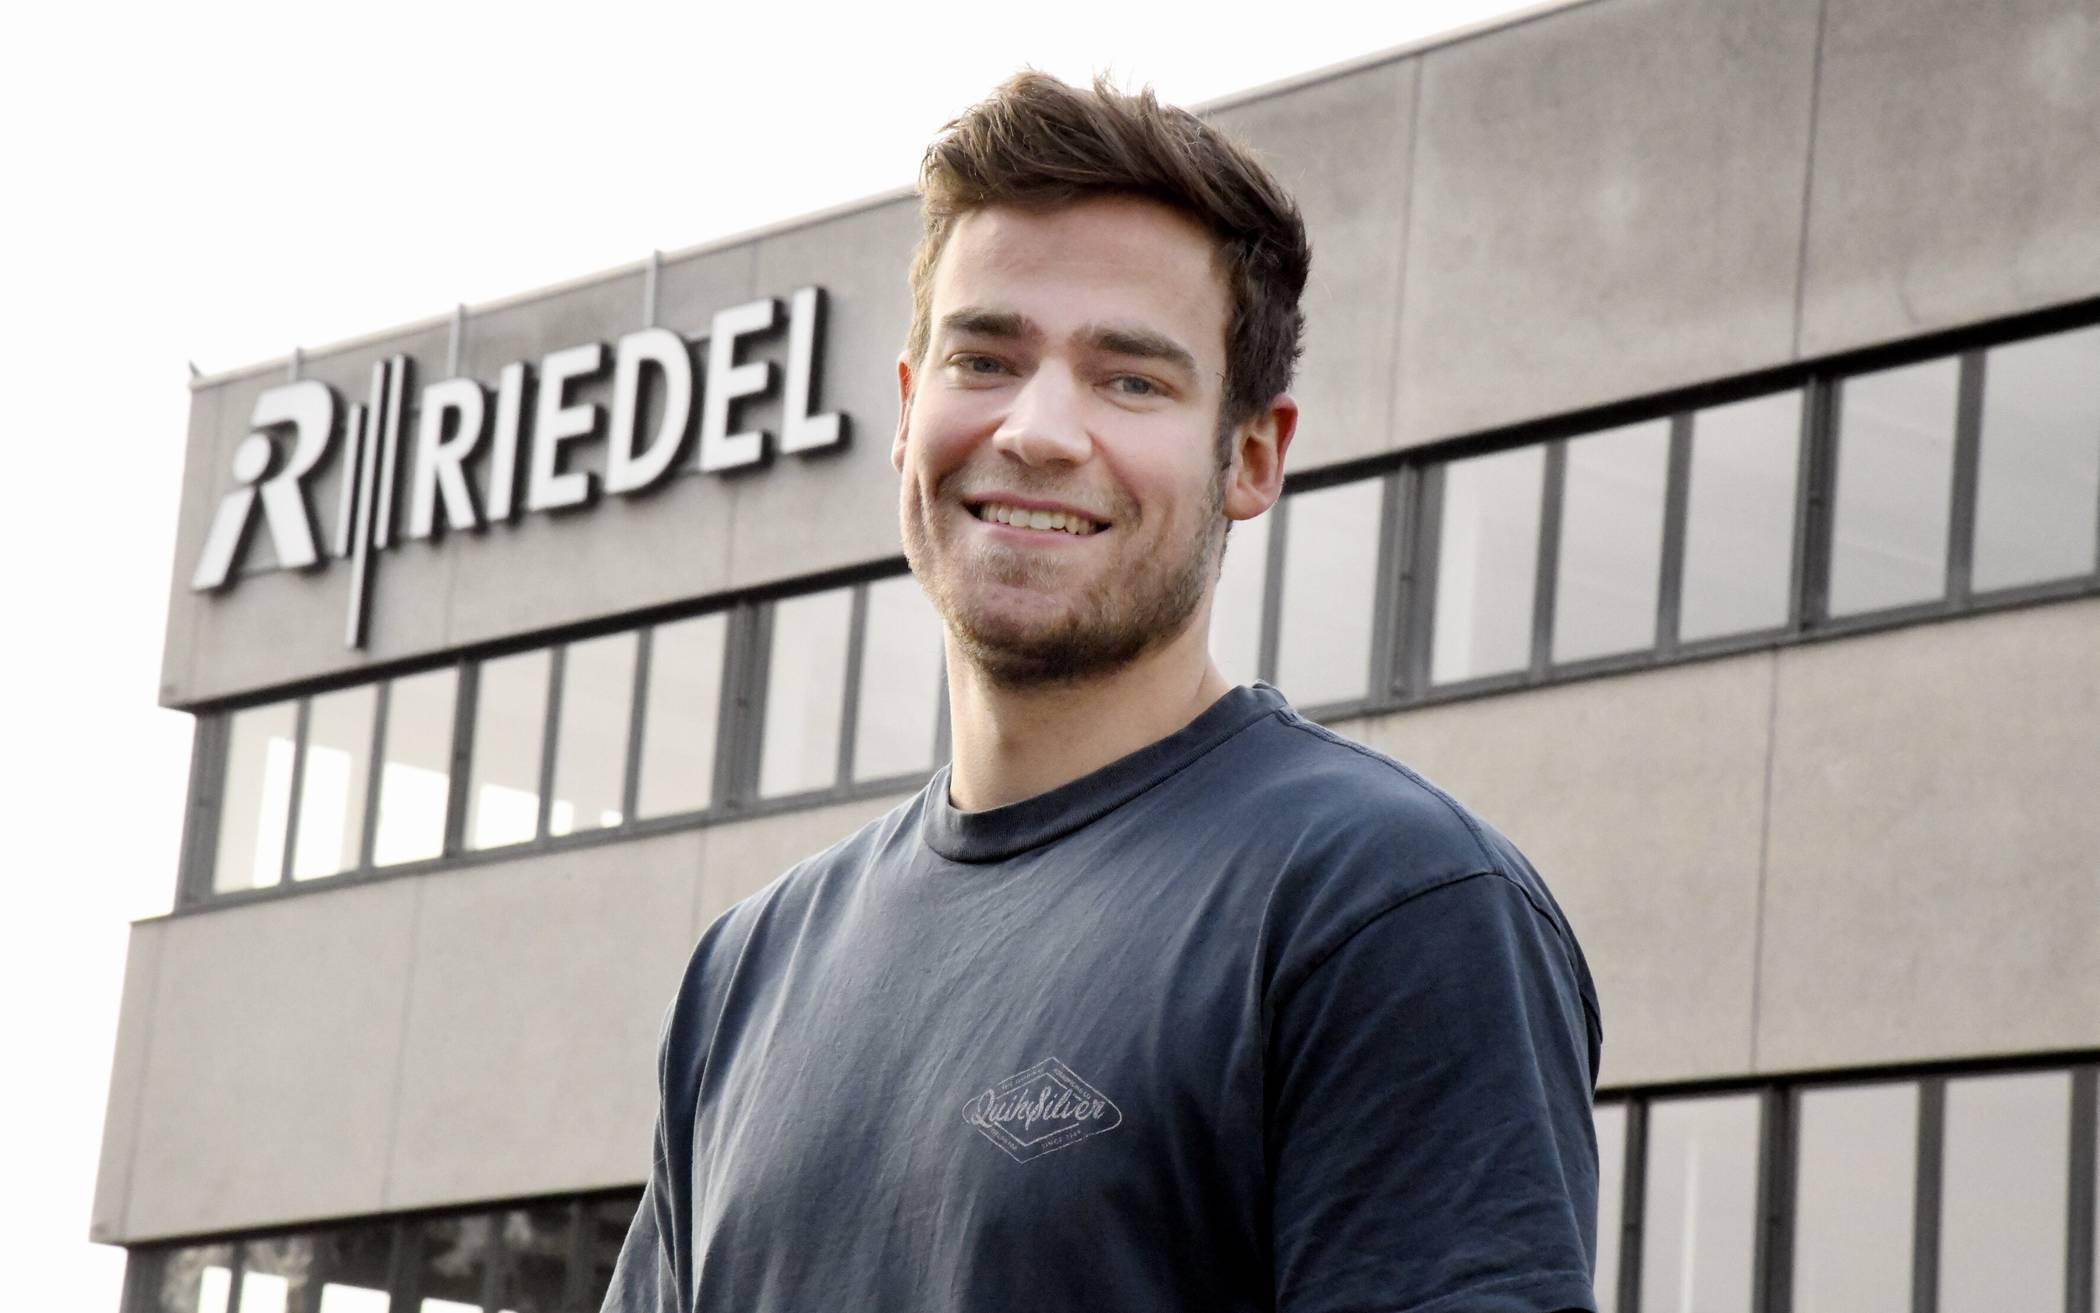  Fabian Becker (24): „Die Ausbildung zum Industriekaufmann ermöglicht mir einen breiten Überblick über gleich mehrere Berufsfelder.“ 